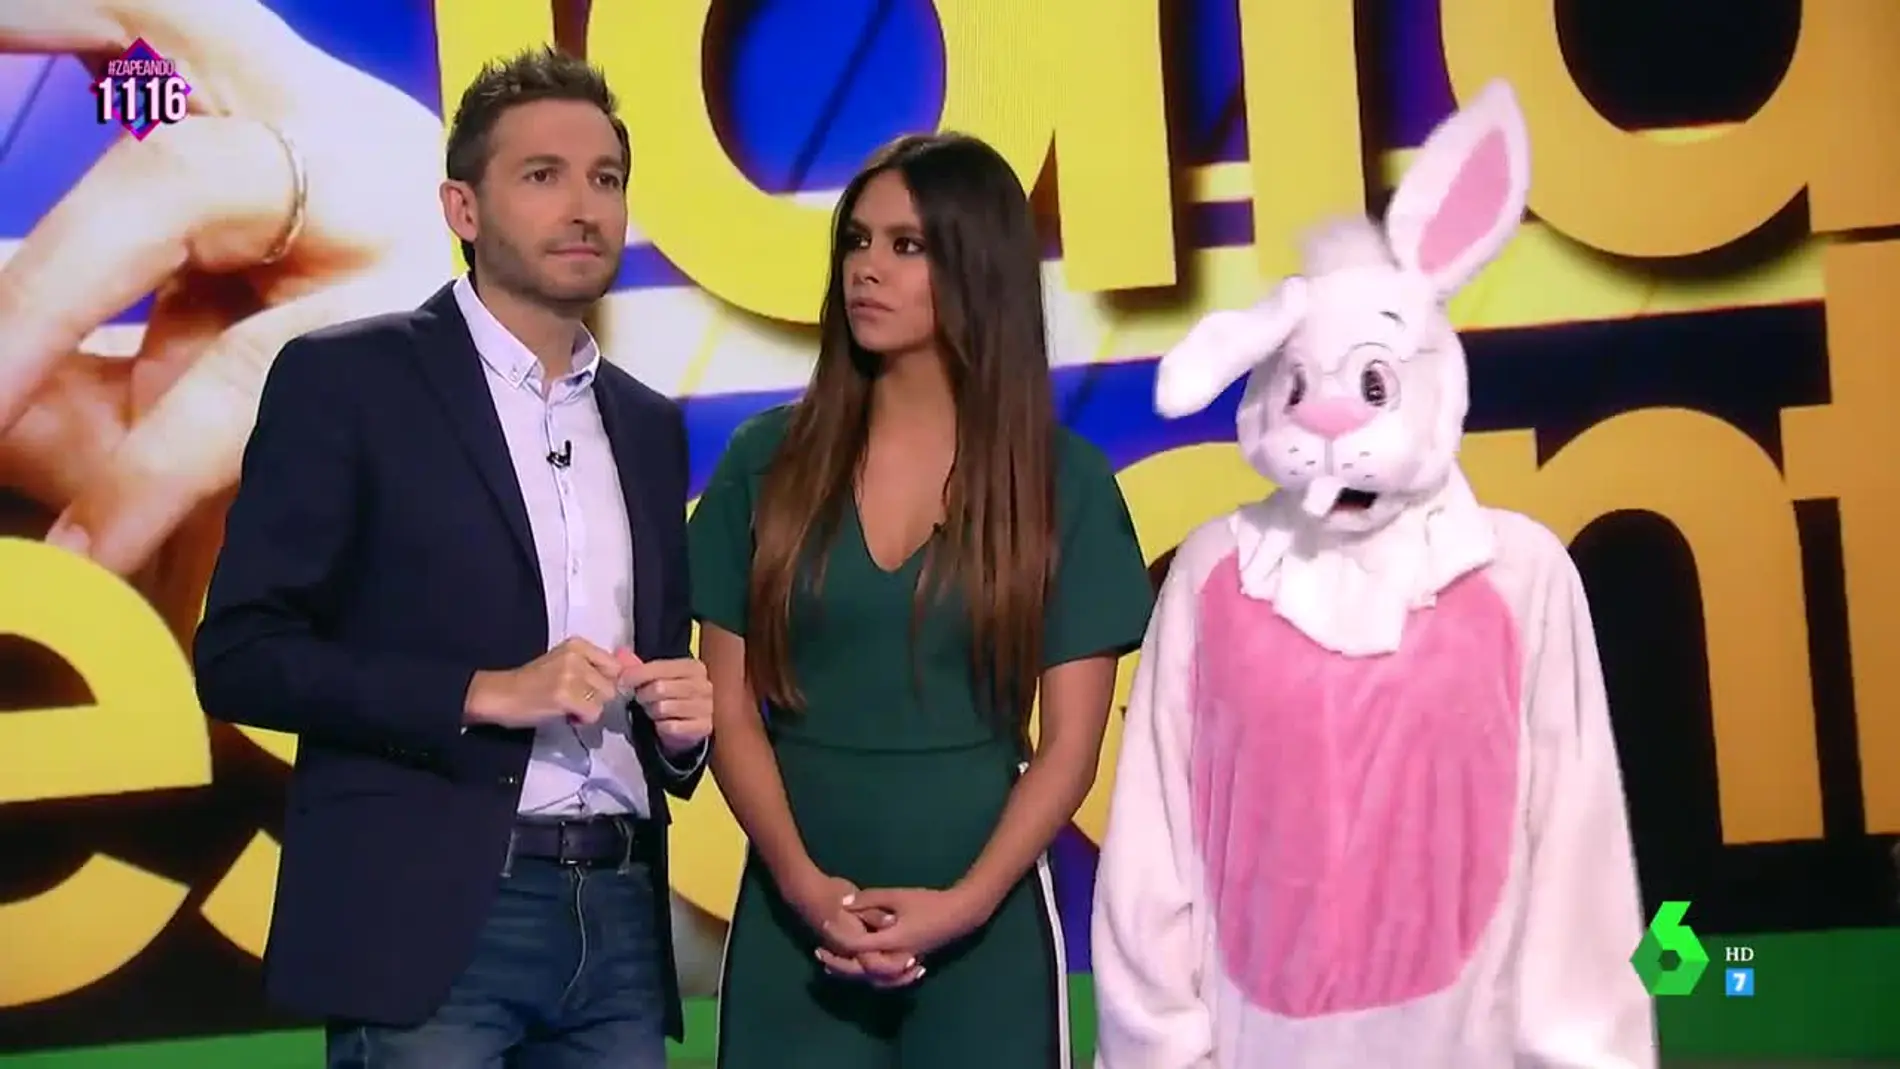 Zapeando resuelve el misterio del conejo amarillo de la papelera de Carles Puigdemont